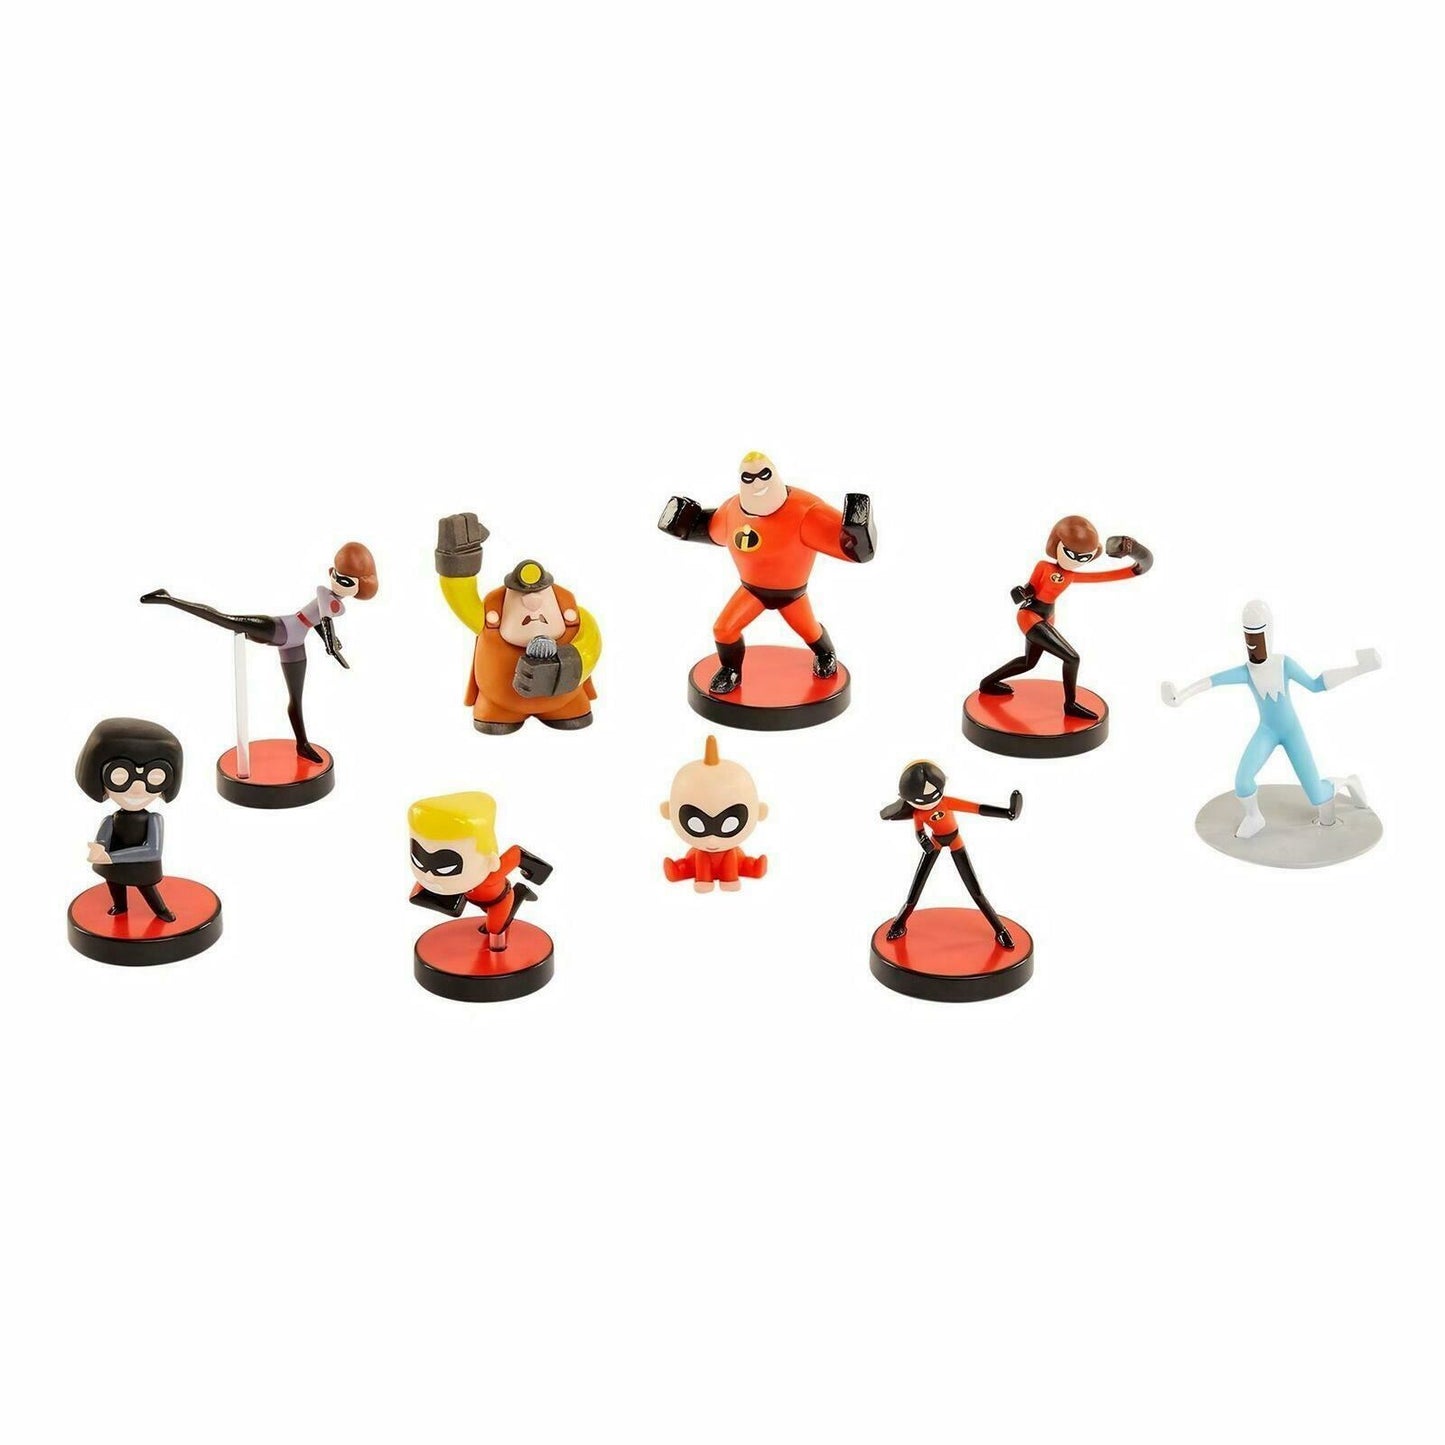 Jakks INCREDIBLES 2 Disney Pixar Mini-Figures Mystery Blind Box Toy [5 Boxes]